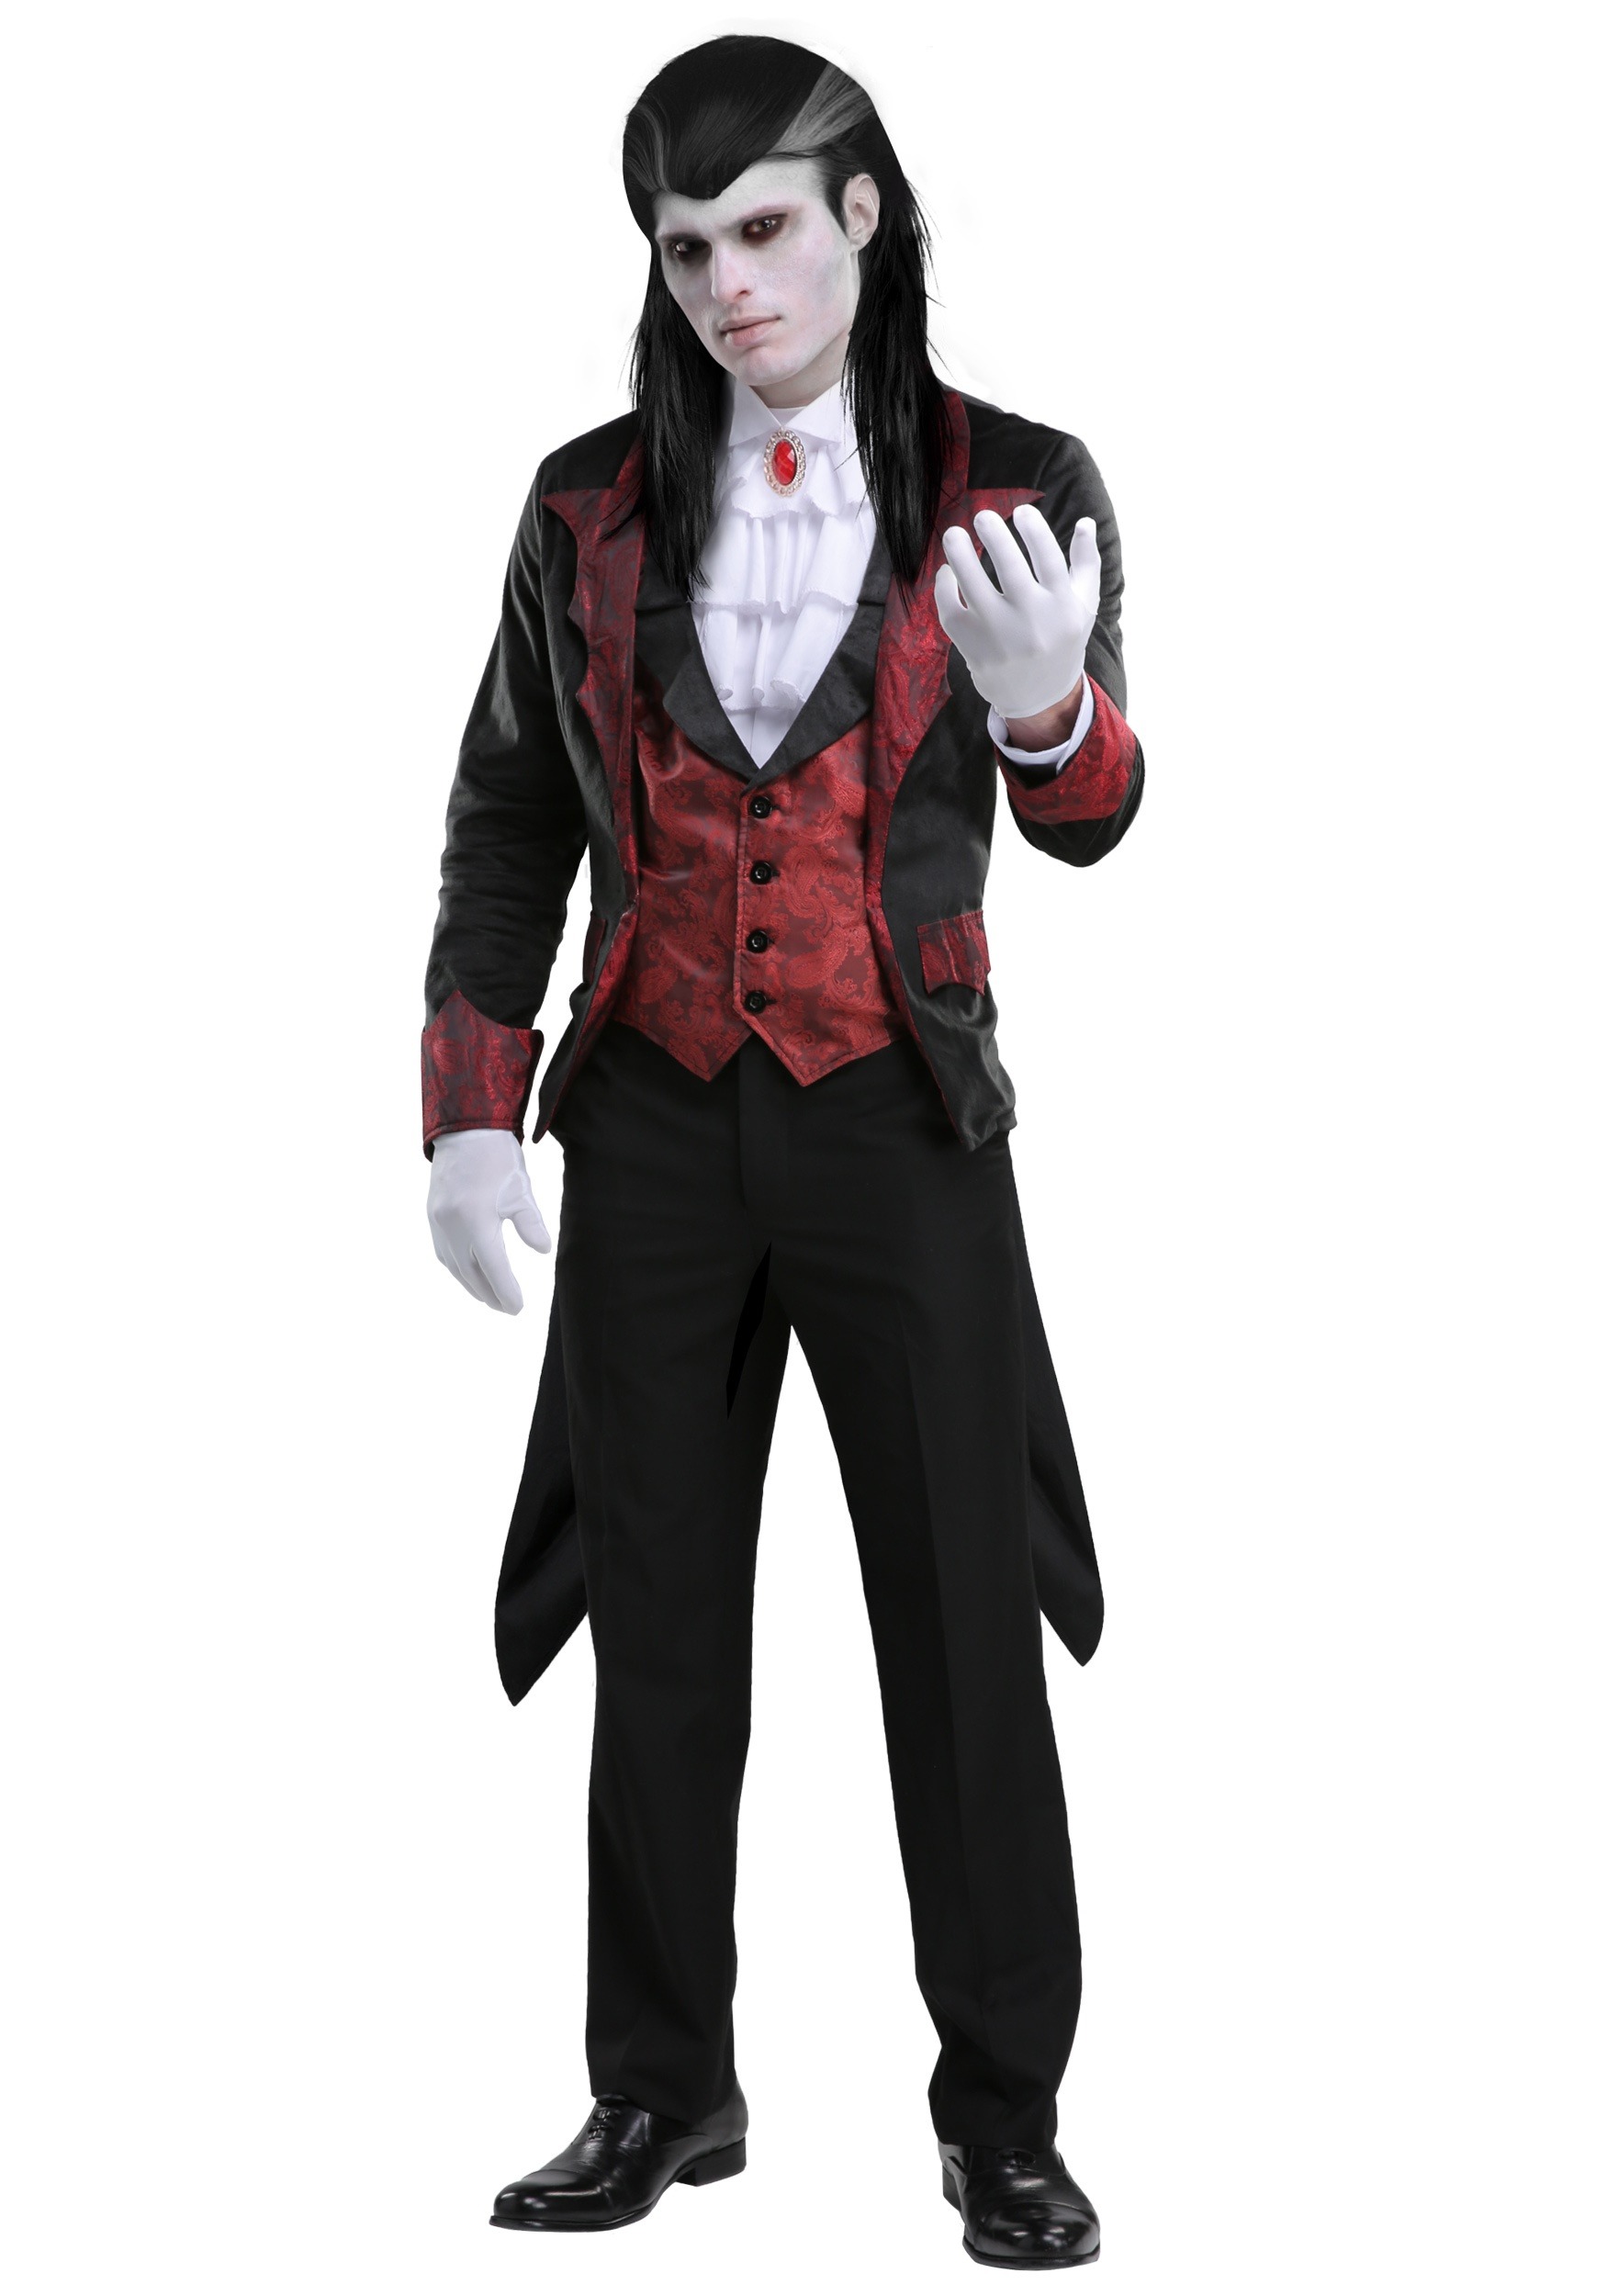 Dashing Vampire Costume for Men